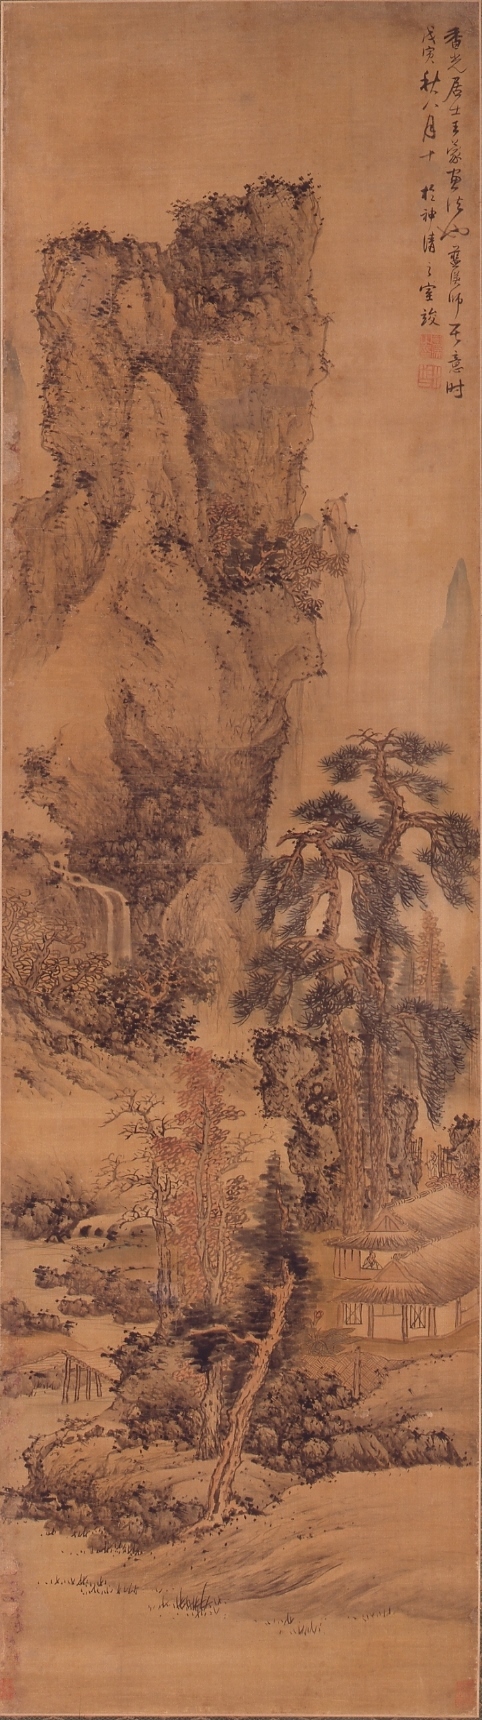 重要文化財 「秋景山水図」 藍瑛 明時代・崇禎11年（1638）